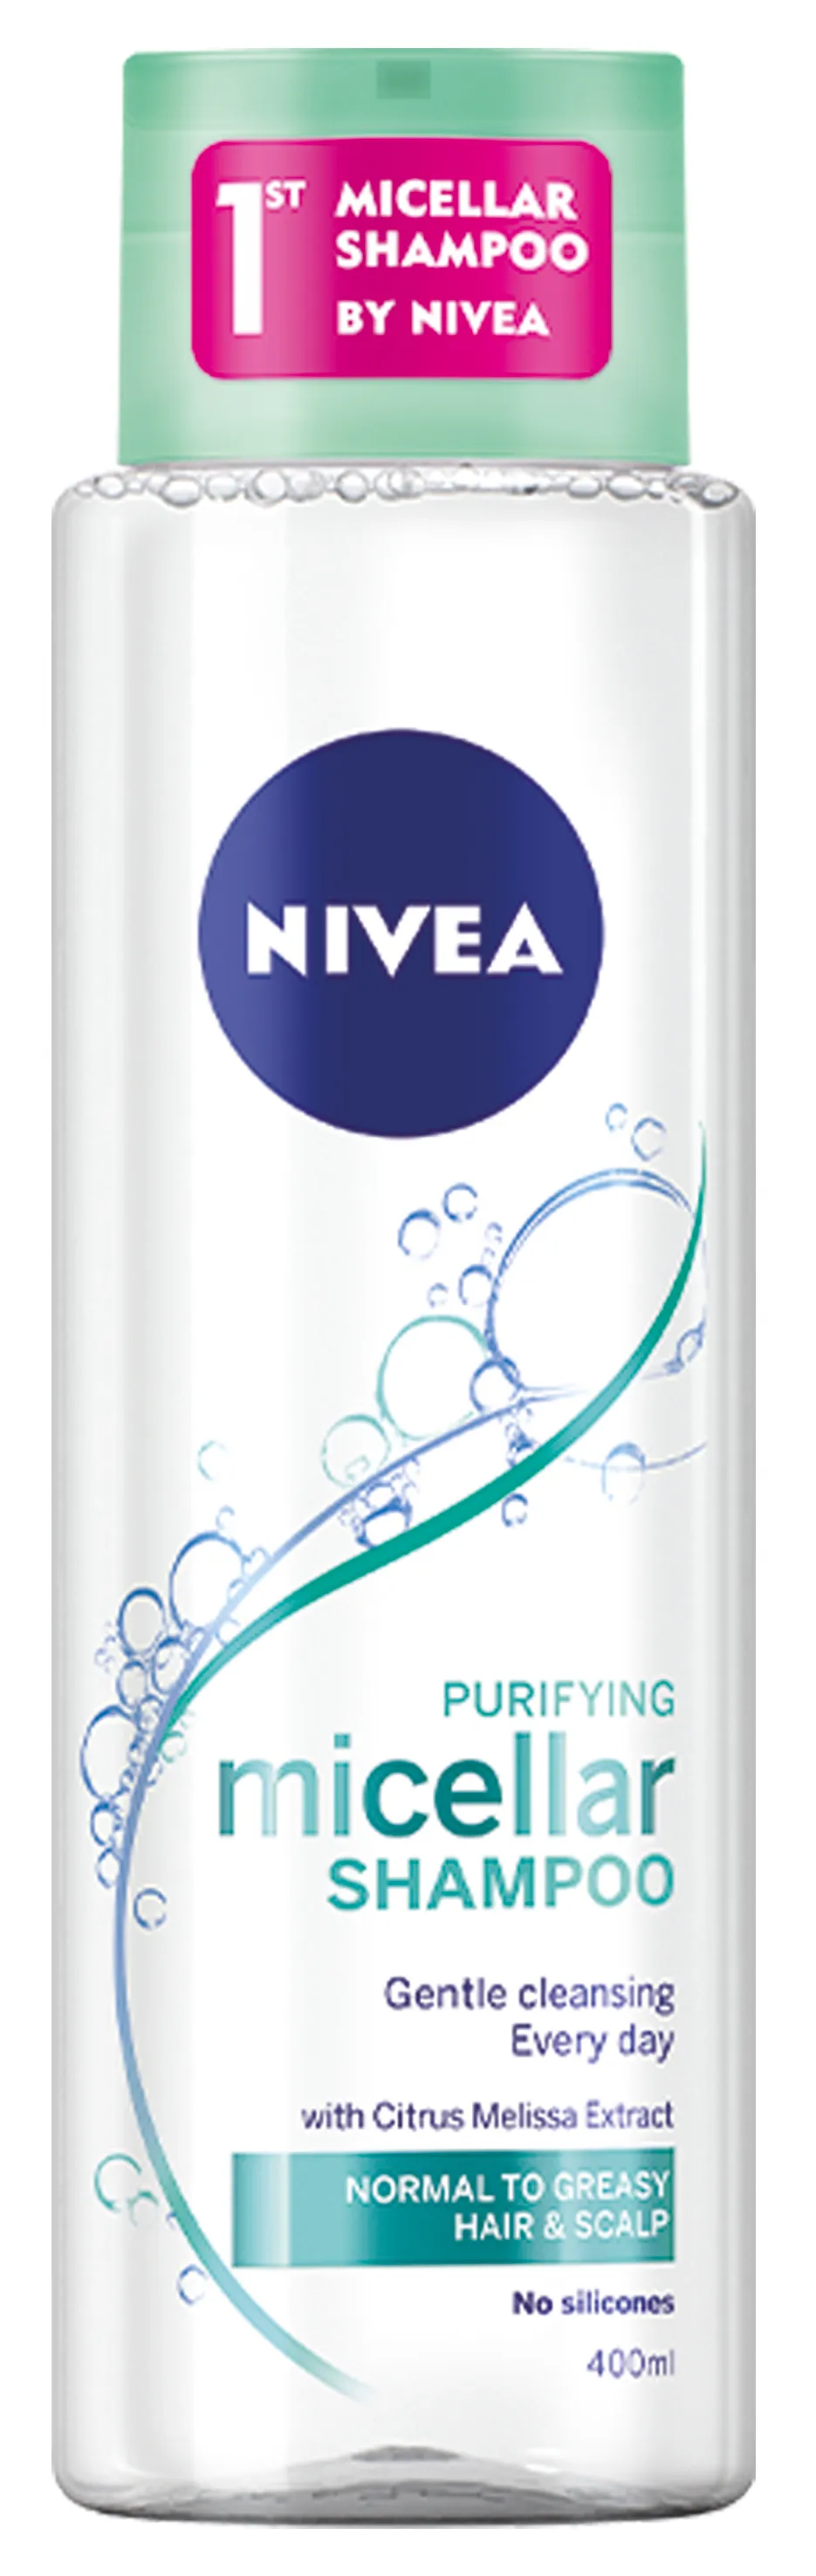 "NIVEA Shampoo Micellare Purifying Normali Per la Cura Dei Capelli 400 ml"